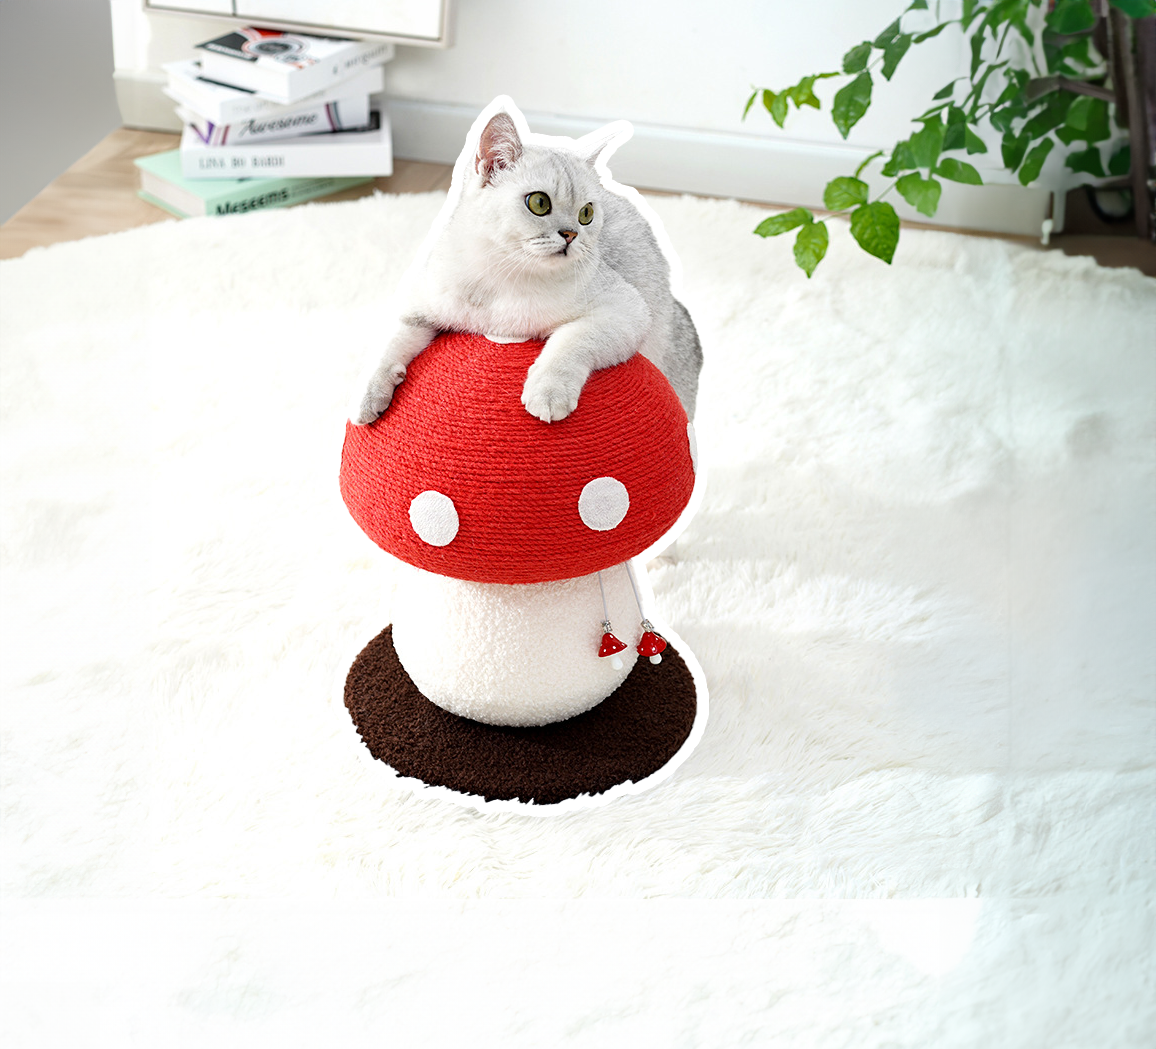 紅蘑菇貓跳台 貓爬架 貓抓柱 貓咪玩具